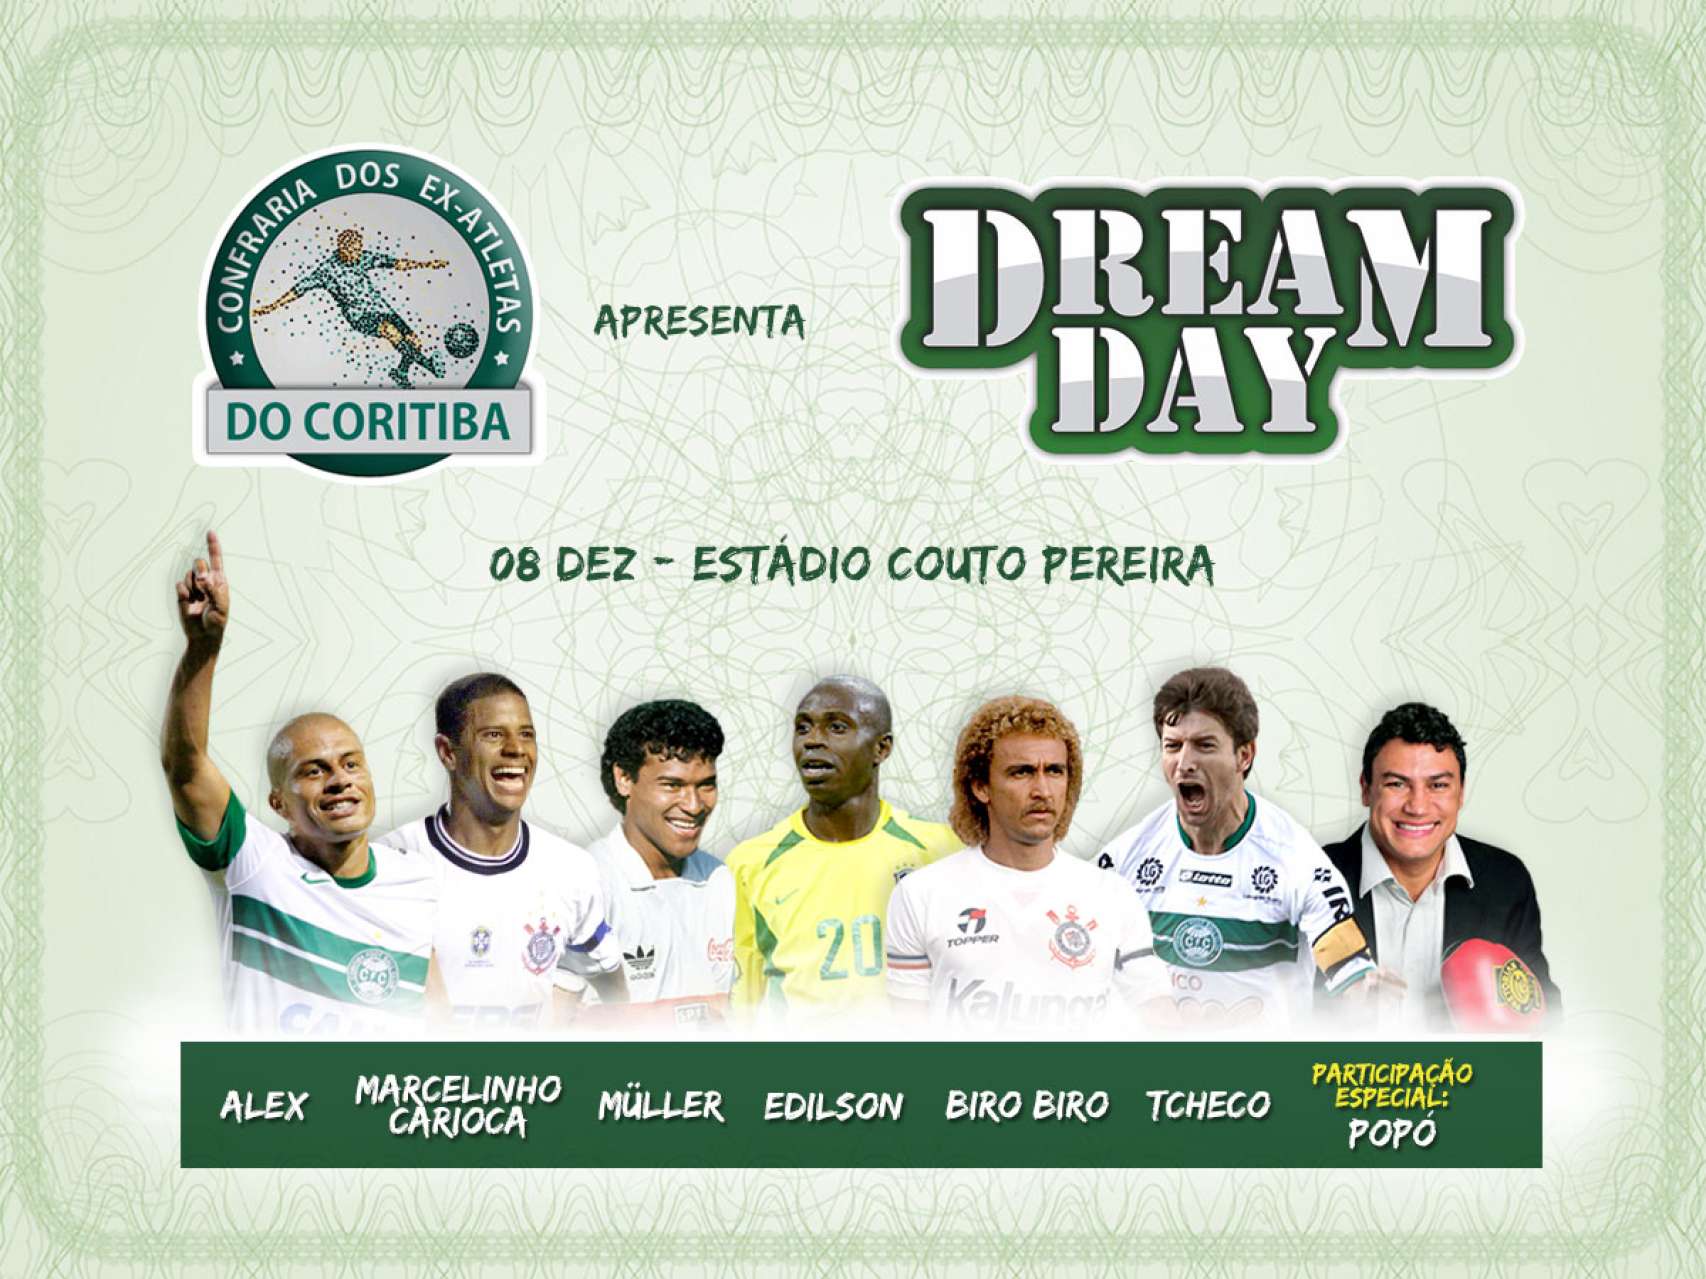 Promoo de ingressos para o Dream Day